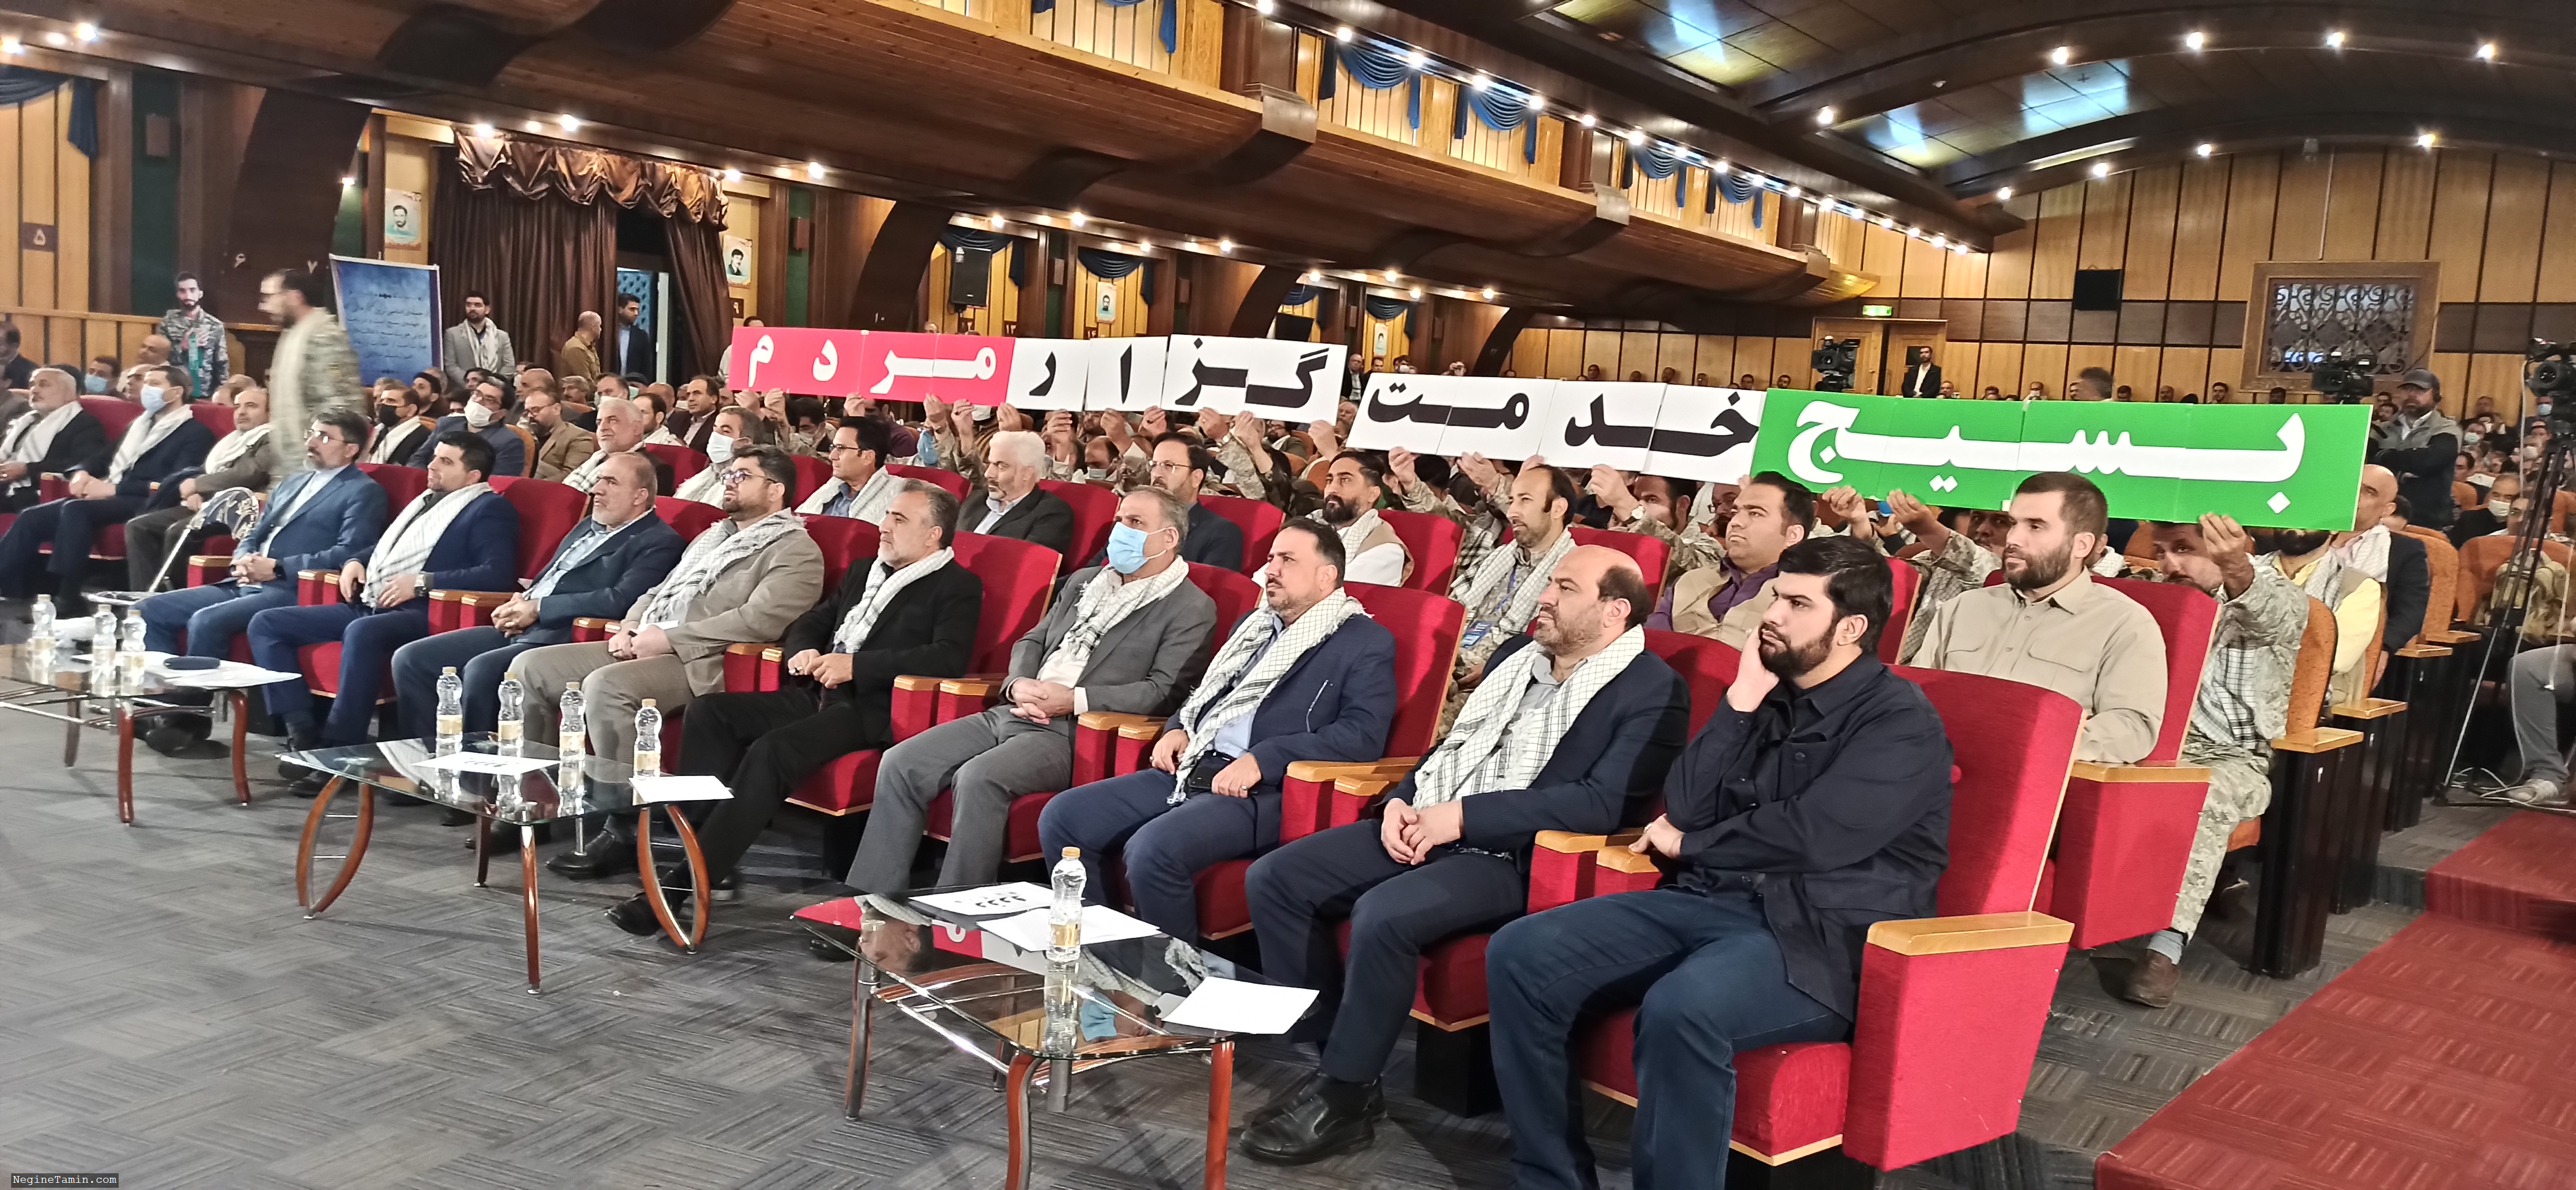 همایش علمی، بسیج، خدمتگزار ملت ایران با حضور پر رنگ همکاران شرکت رفاه گستر و نگین تامین برگزار شد